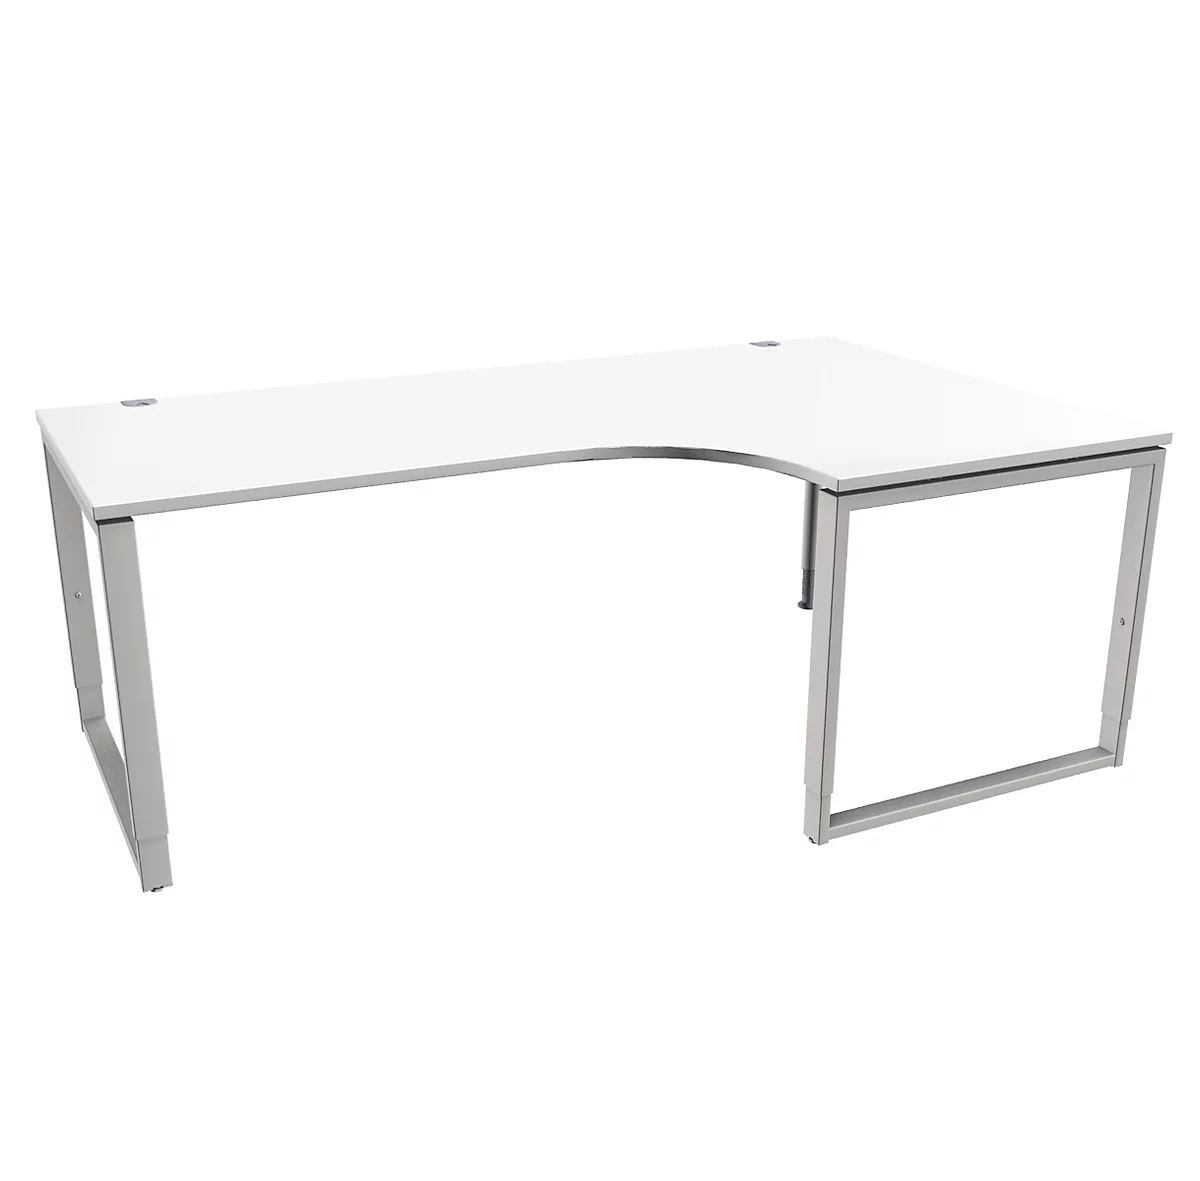 Schäfer Shop Genius MODENA FLEX escritorio angular, 90°, pie de escuadra, fijación derecha, An 2000 mm, blanco